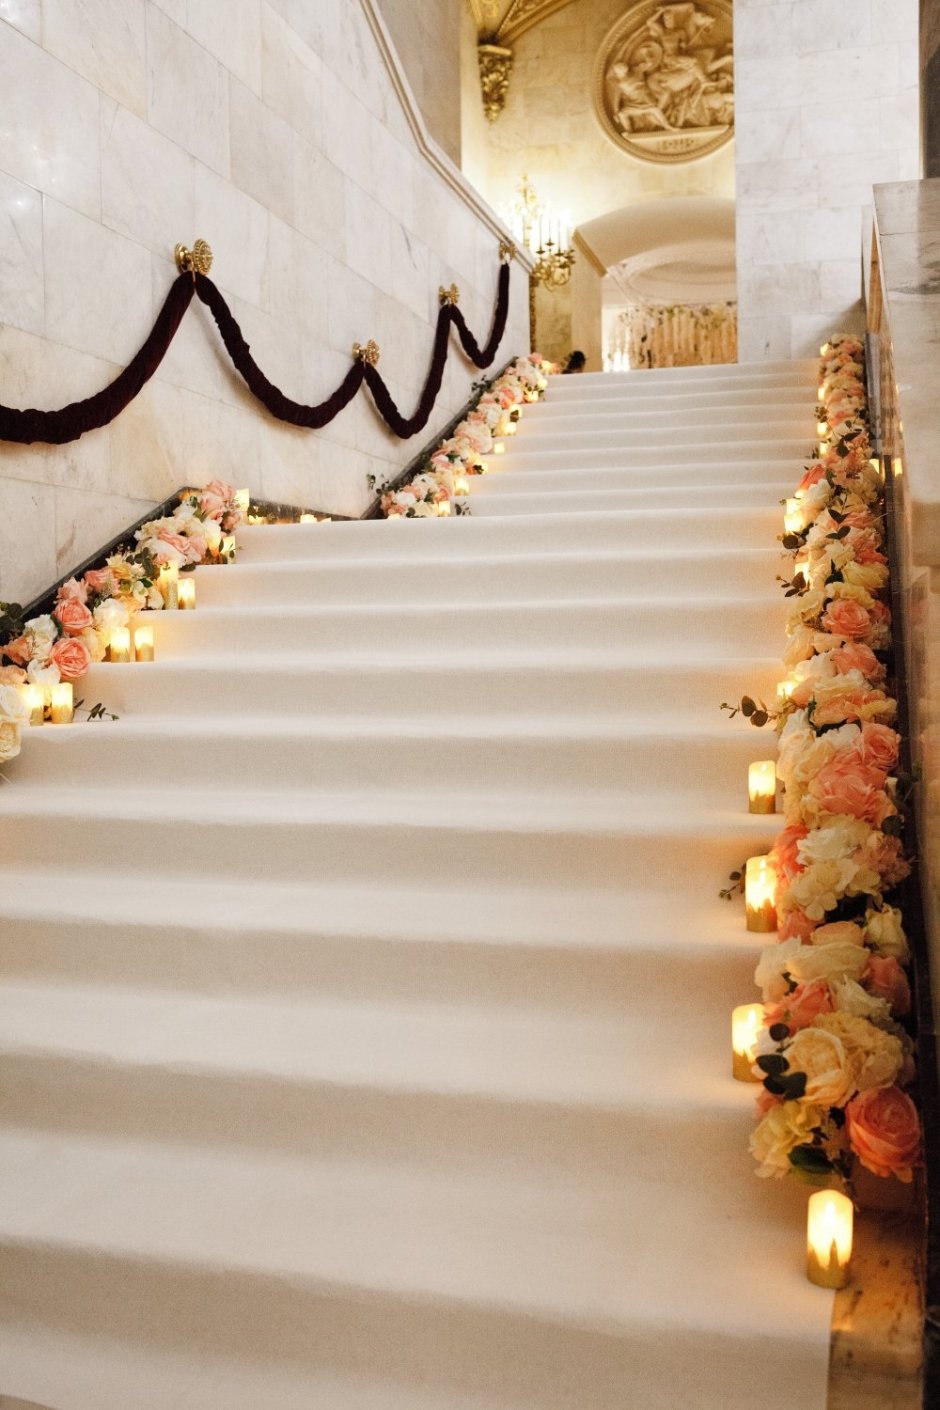 Украшение лестницы на свадьбу